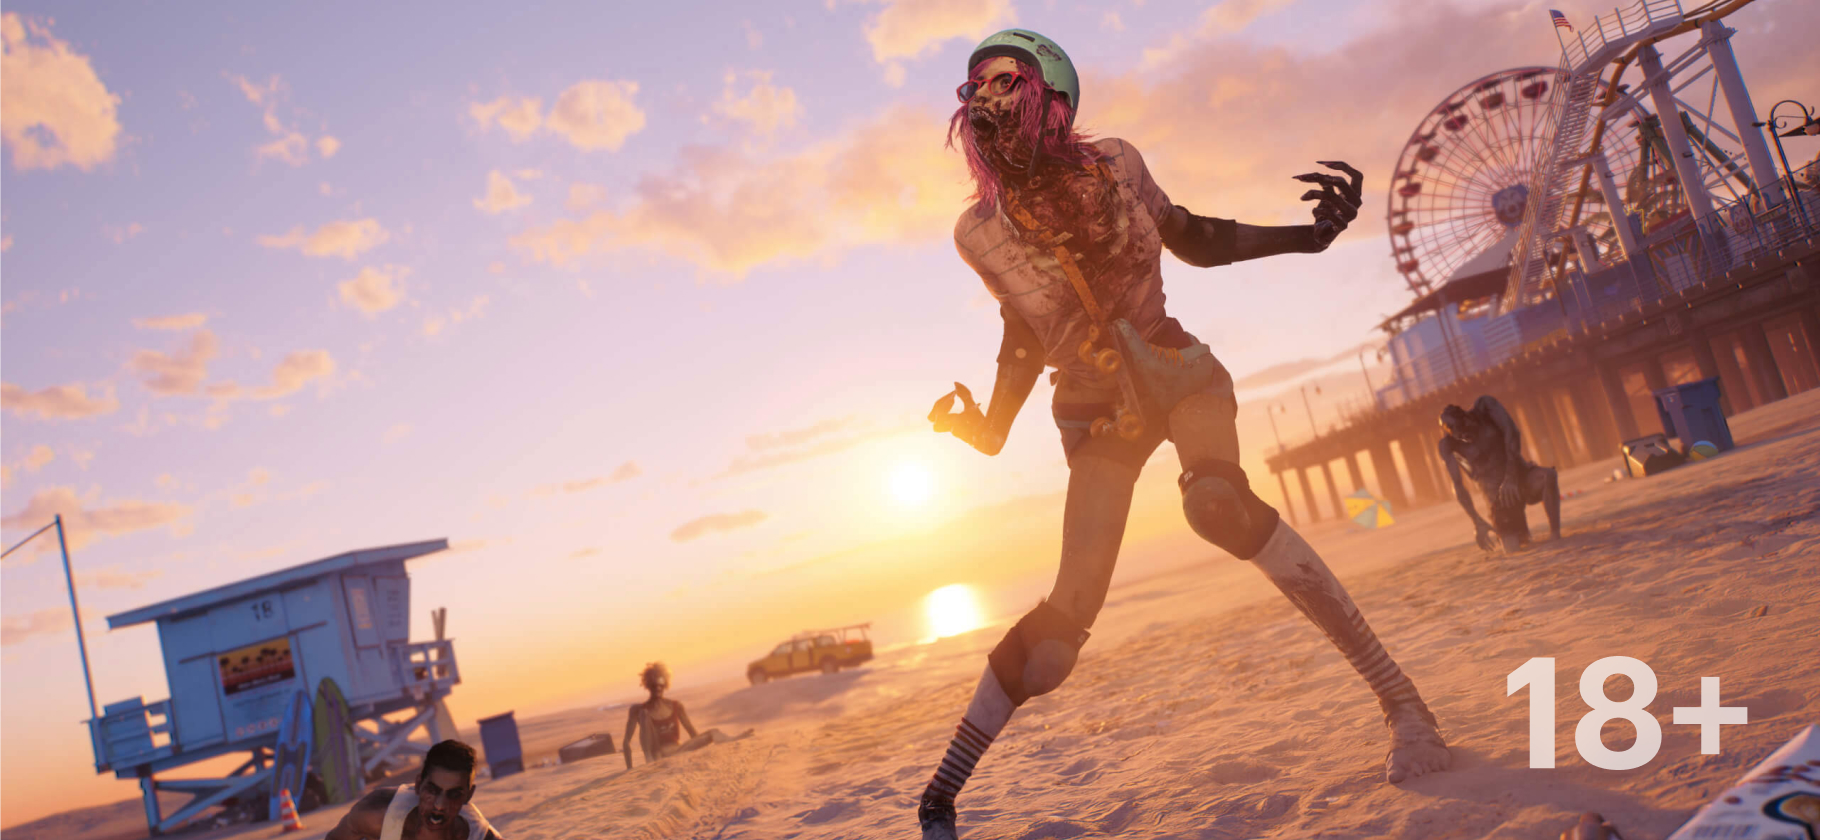 Dead Island 2: что нового, стоит ли покупать, советы по прохождению